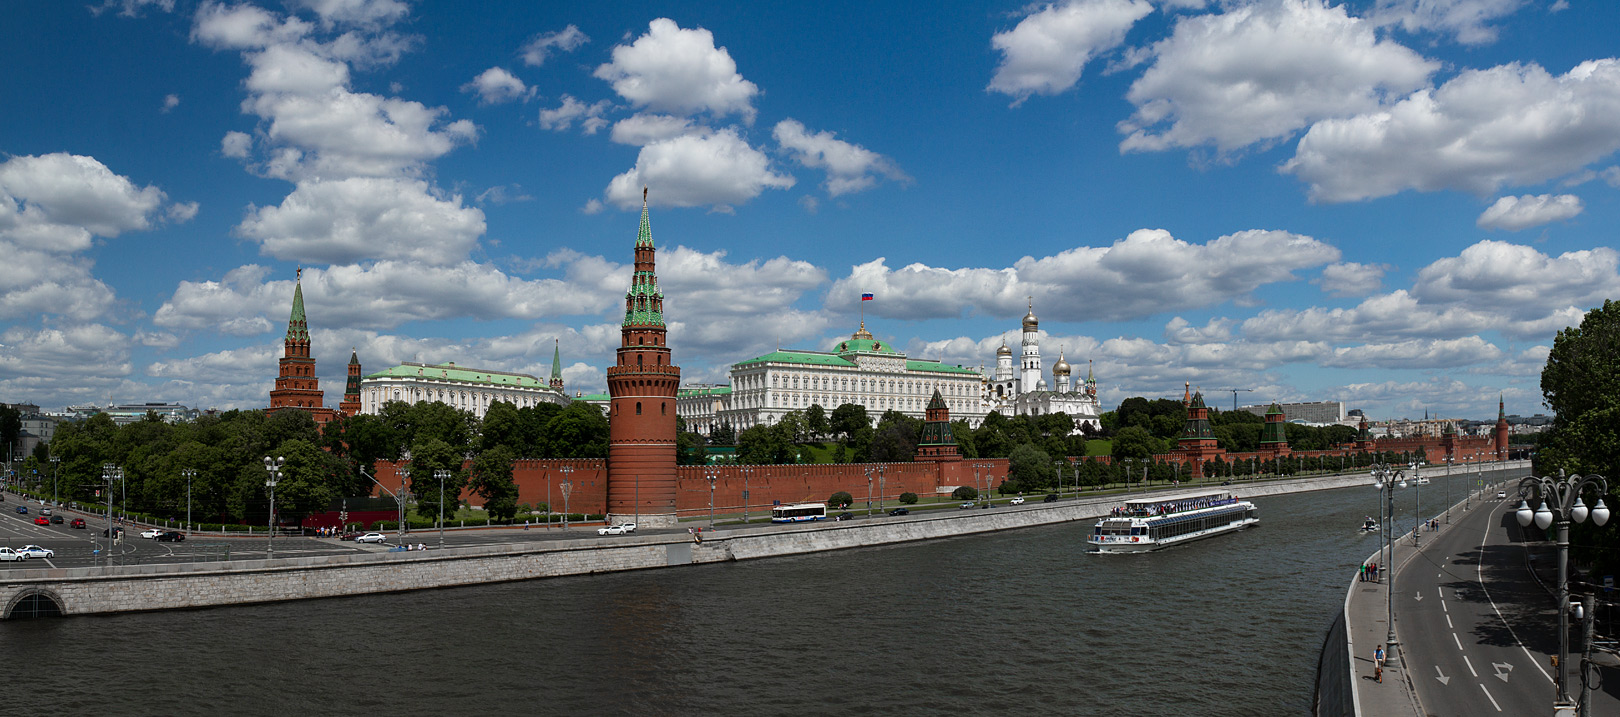 Кремлевская набережная большой каменный мост